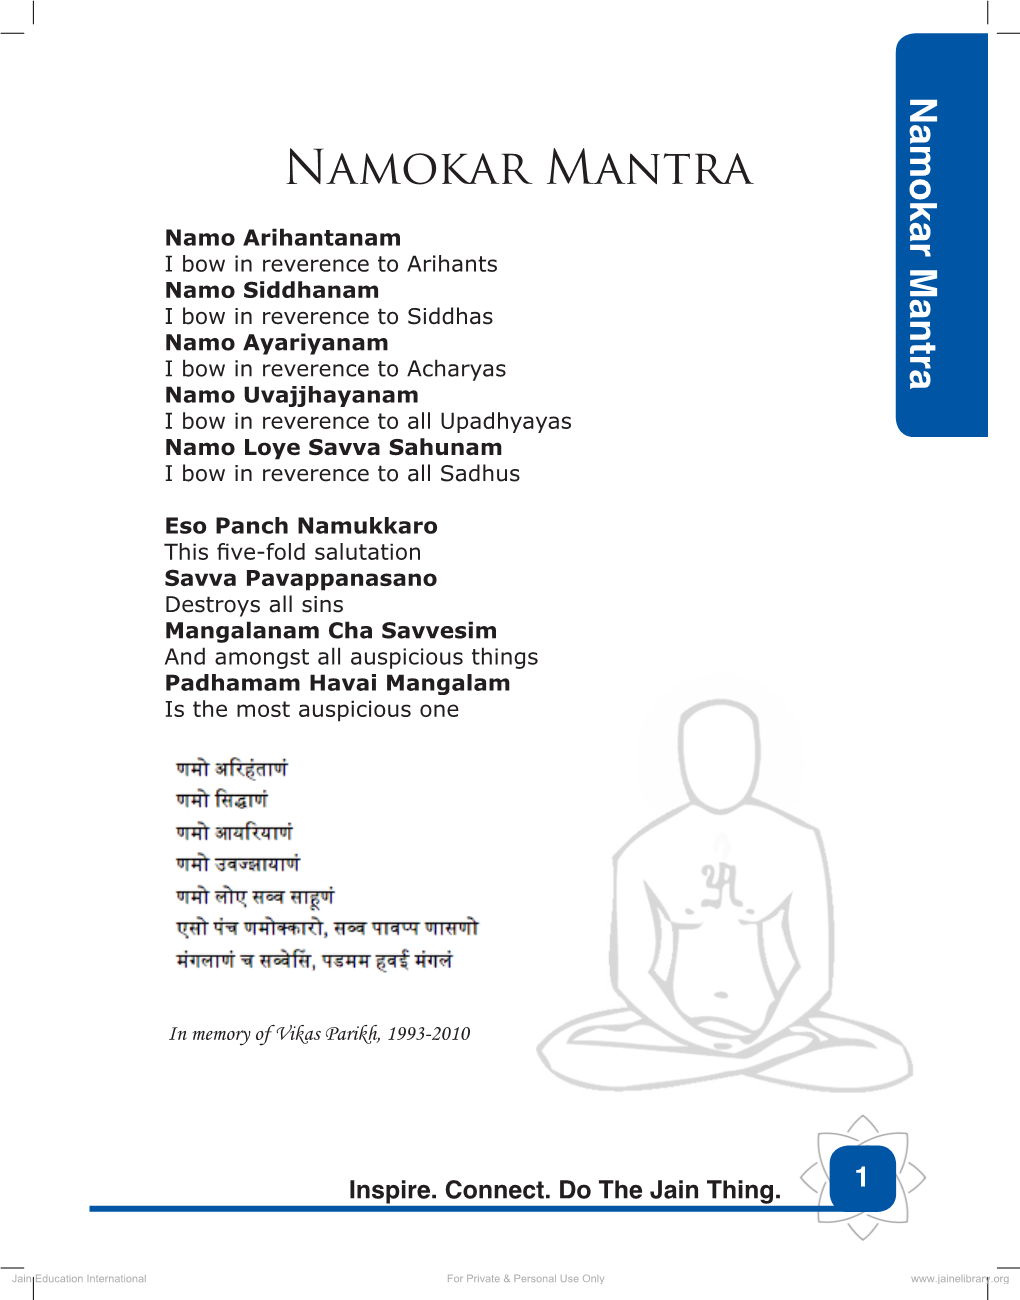 Namokar Mantra